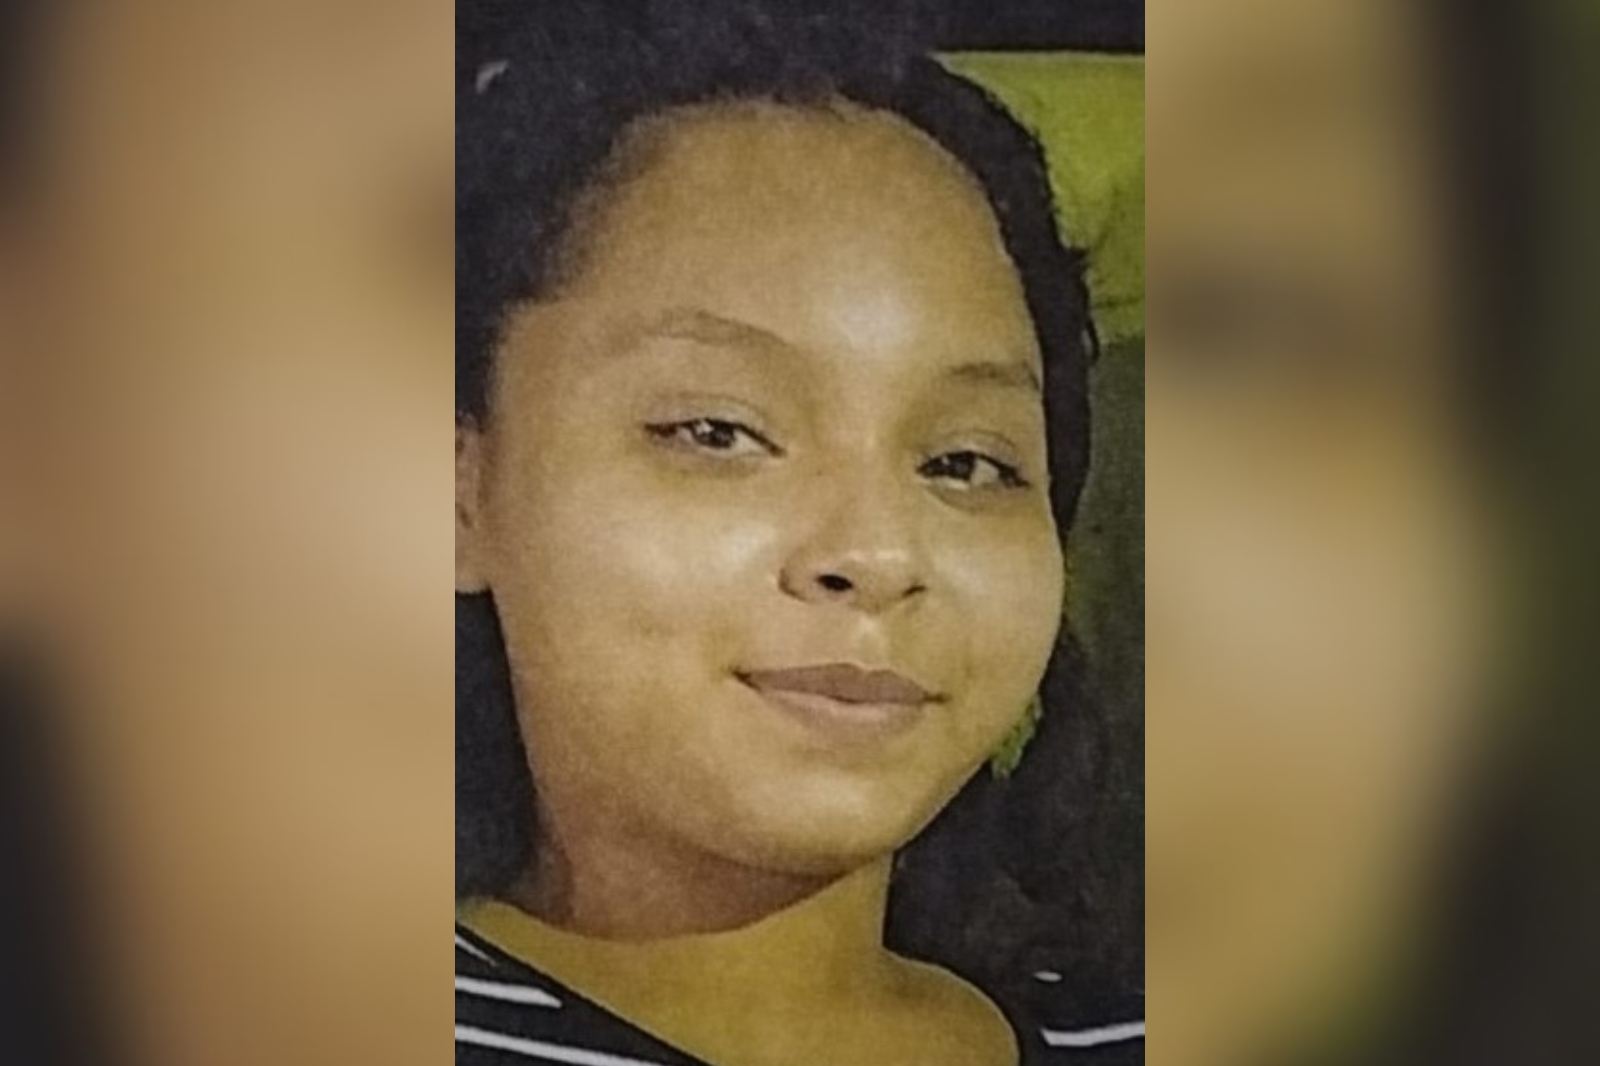 Alerta Ámber Quintana Roo: Buscan a Ana Gabriela Concepción García desaparecida en Cancún